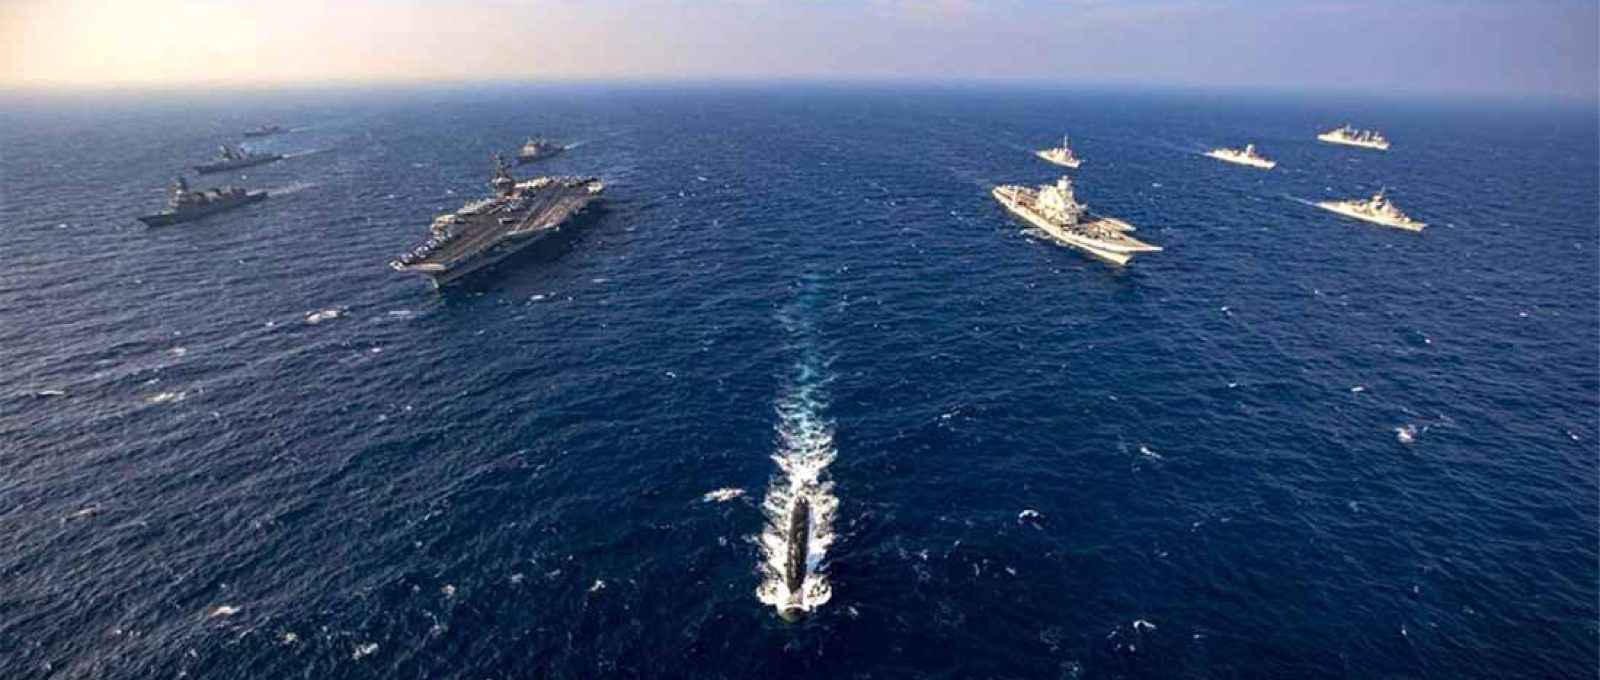 Embarcações das marinhas da Índia, EUA, Japão e Austrália participando do exercício Malabar 2020. O porta-aviões USS Nimitz, da Marinha americana, o submarino INS Khanderi e o porta-aviões INS Vikramaditya, da Marinha indiana, podem ser vistos na imagem (Foto: Marinha da Índia).